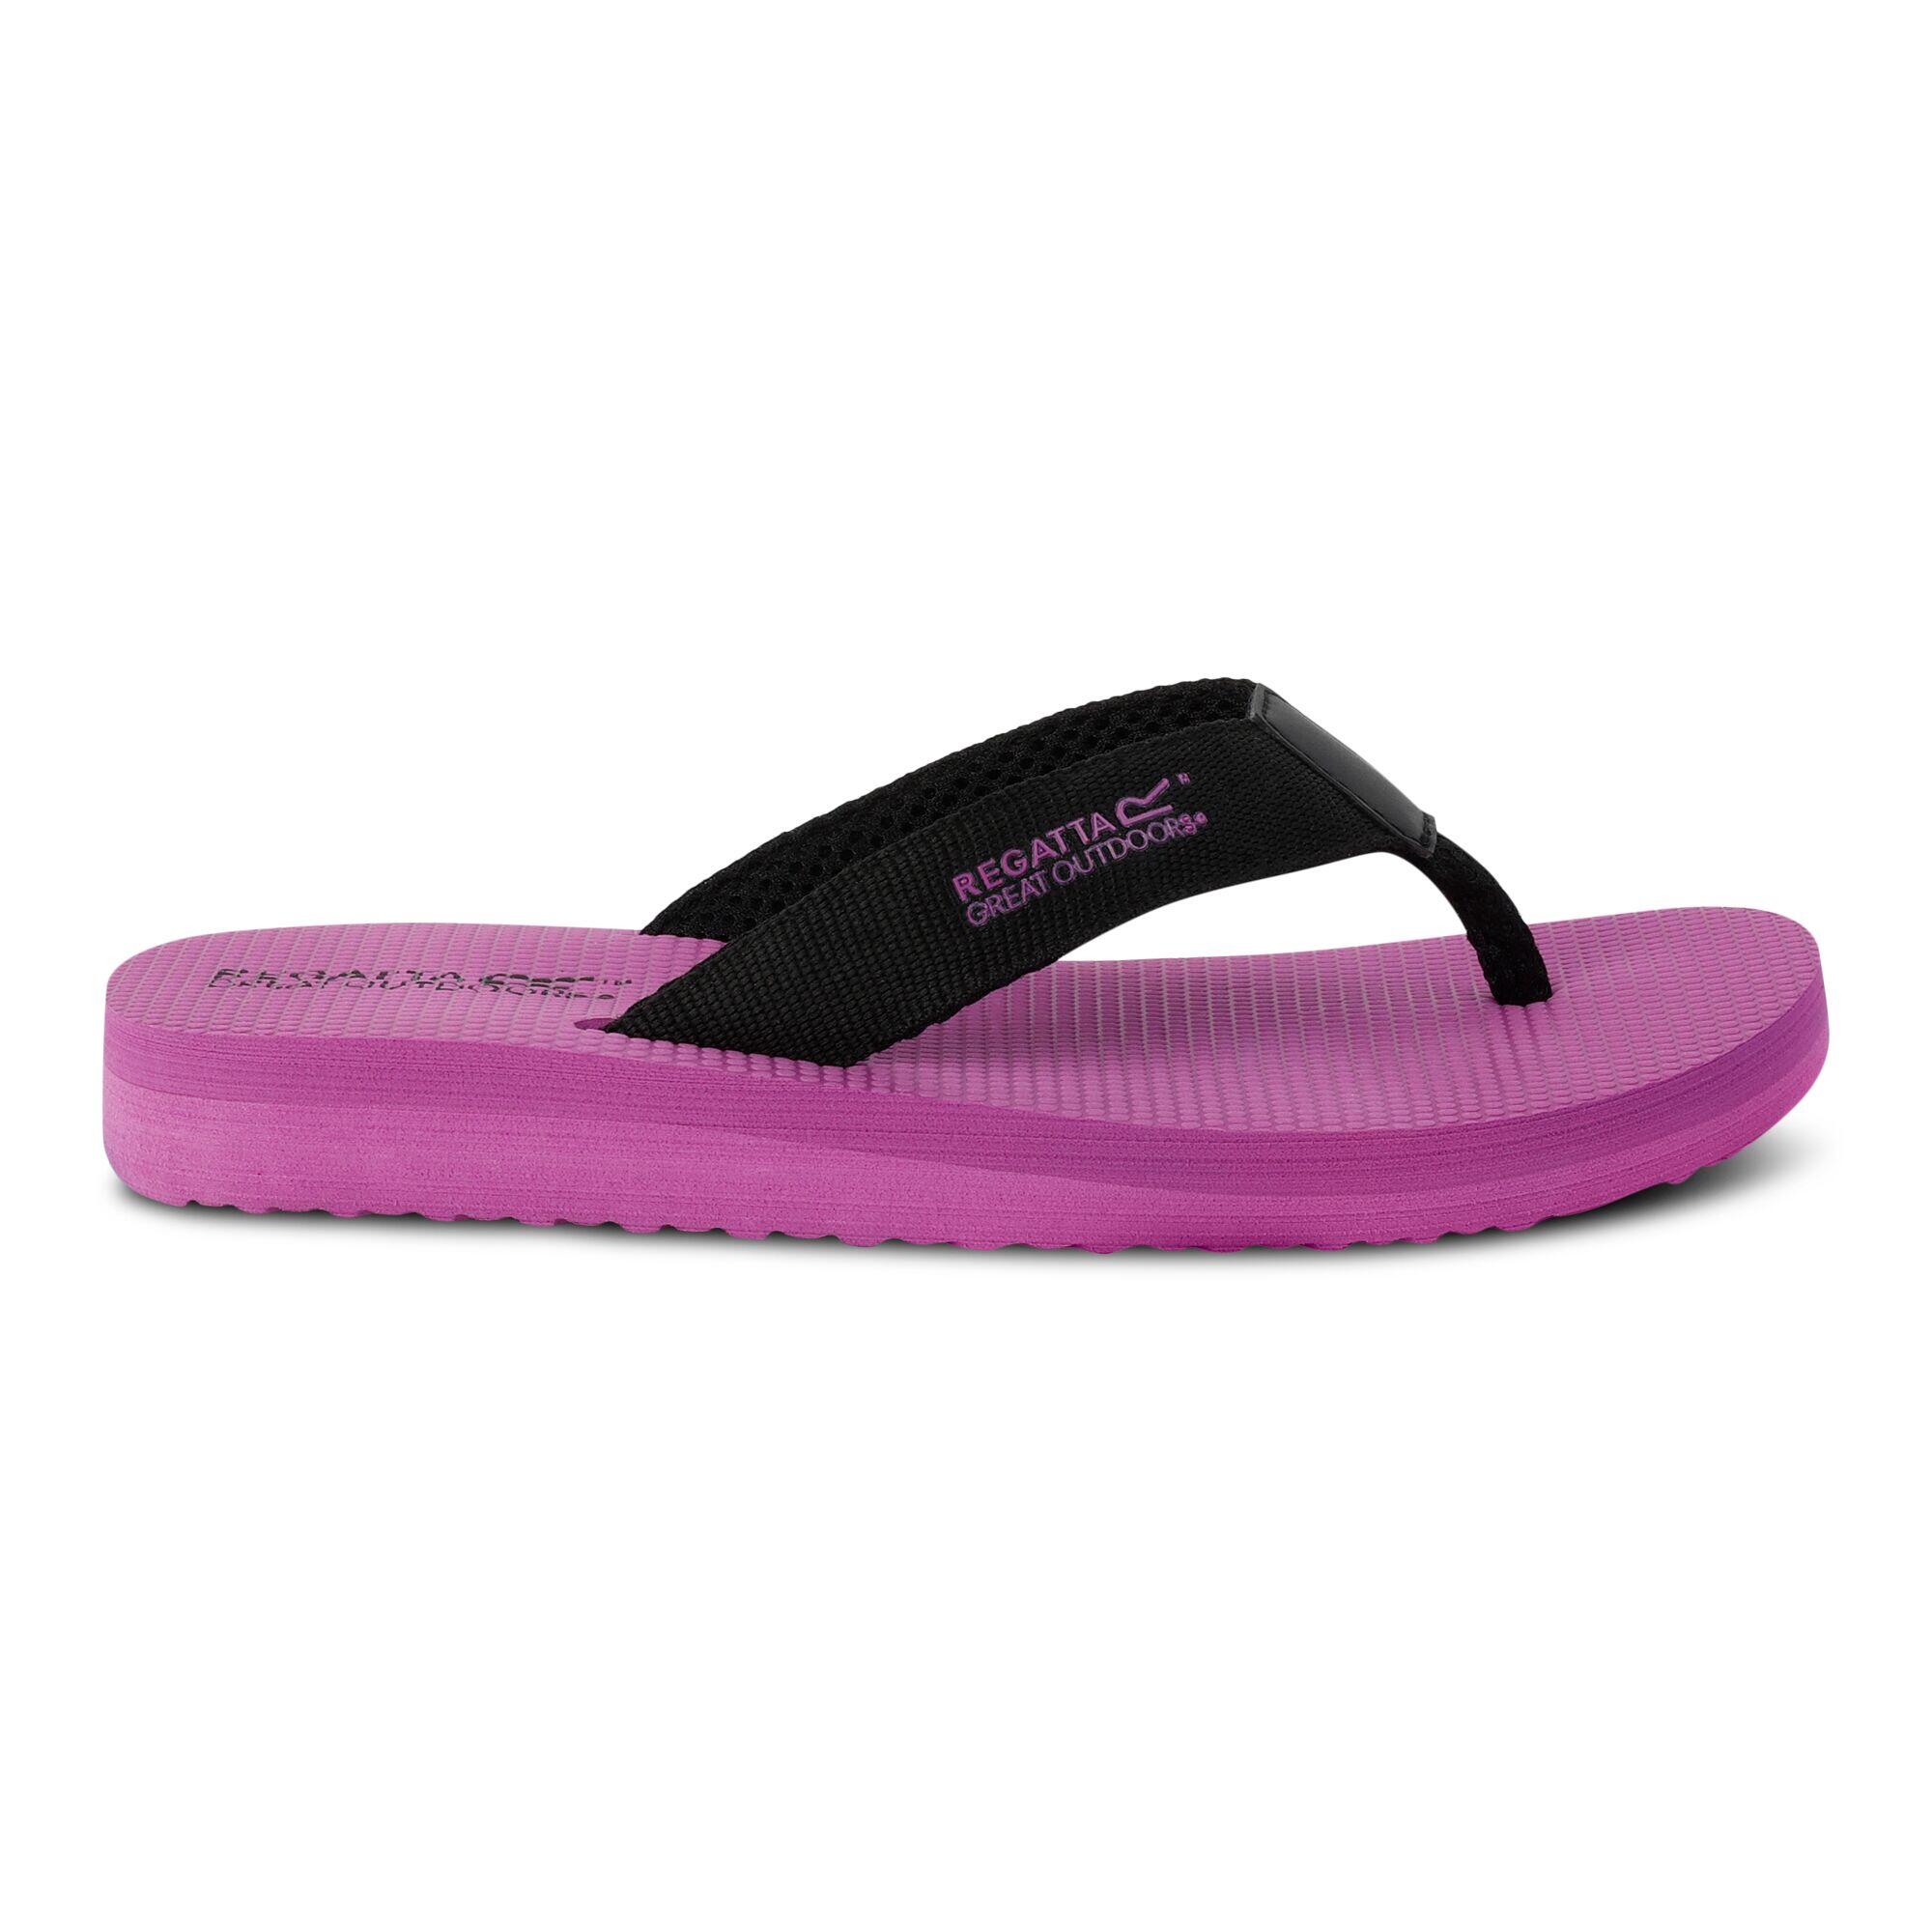 REGATTA Women's Catarina Flip Flops